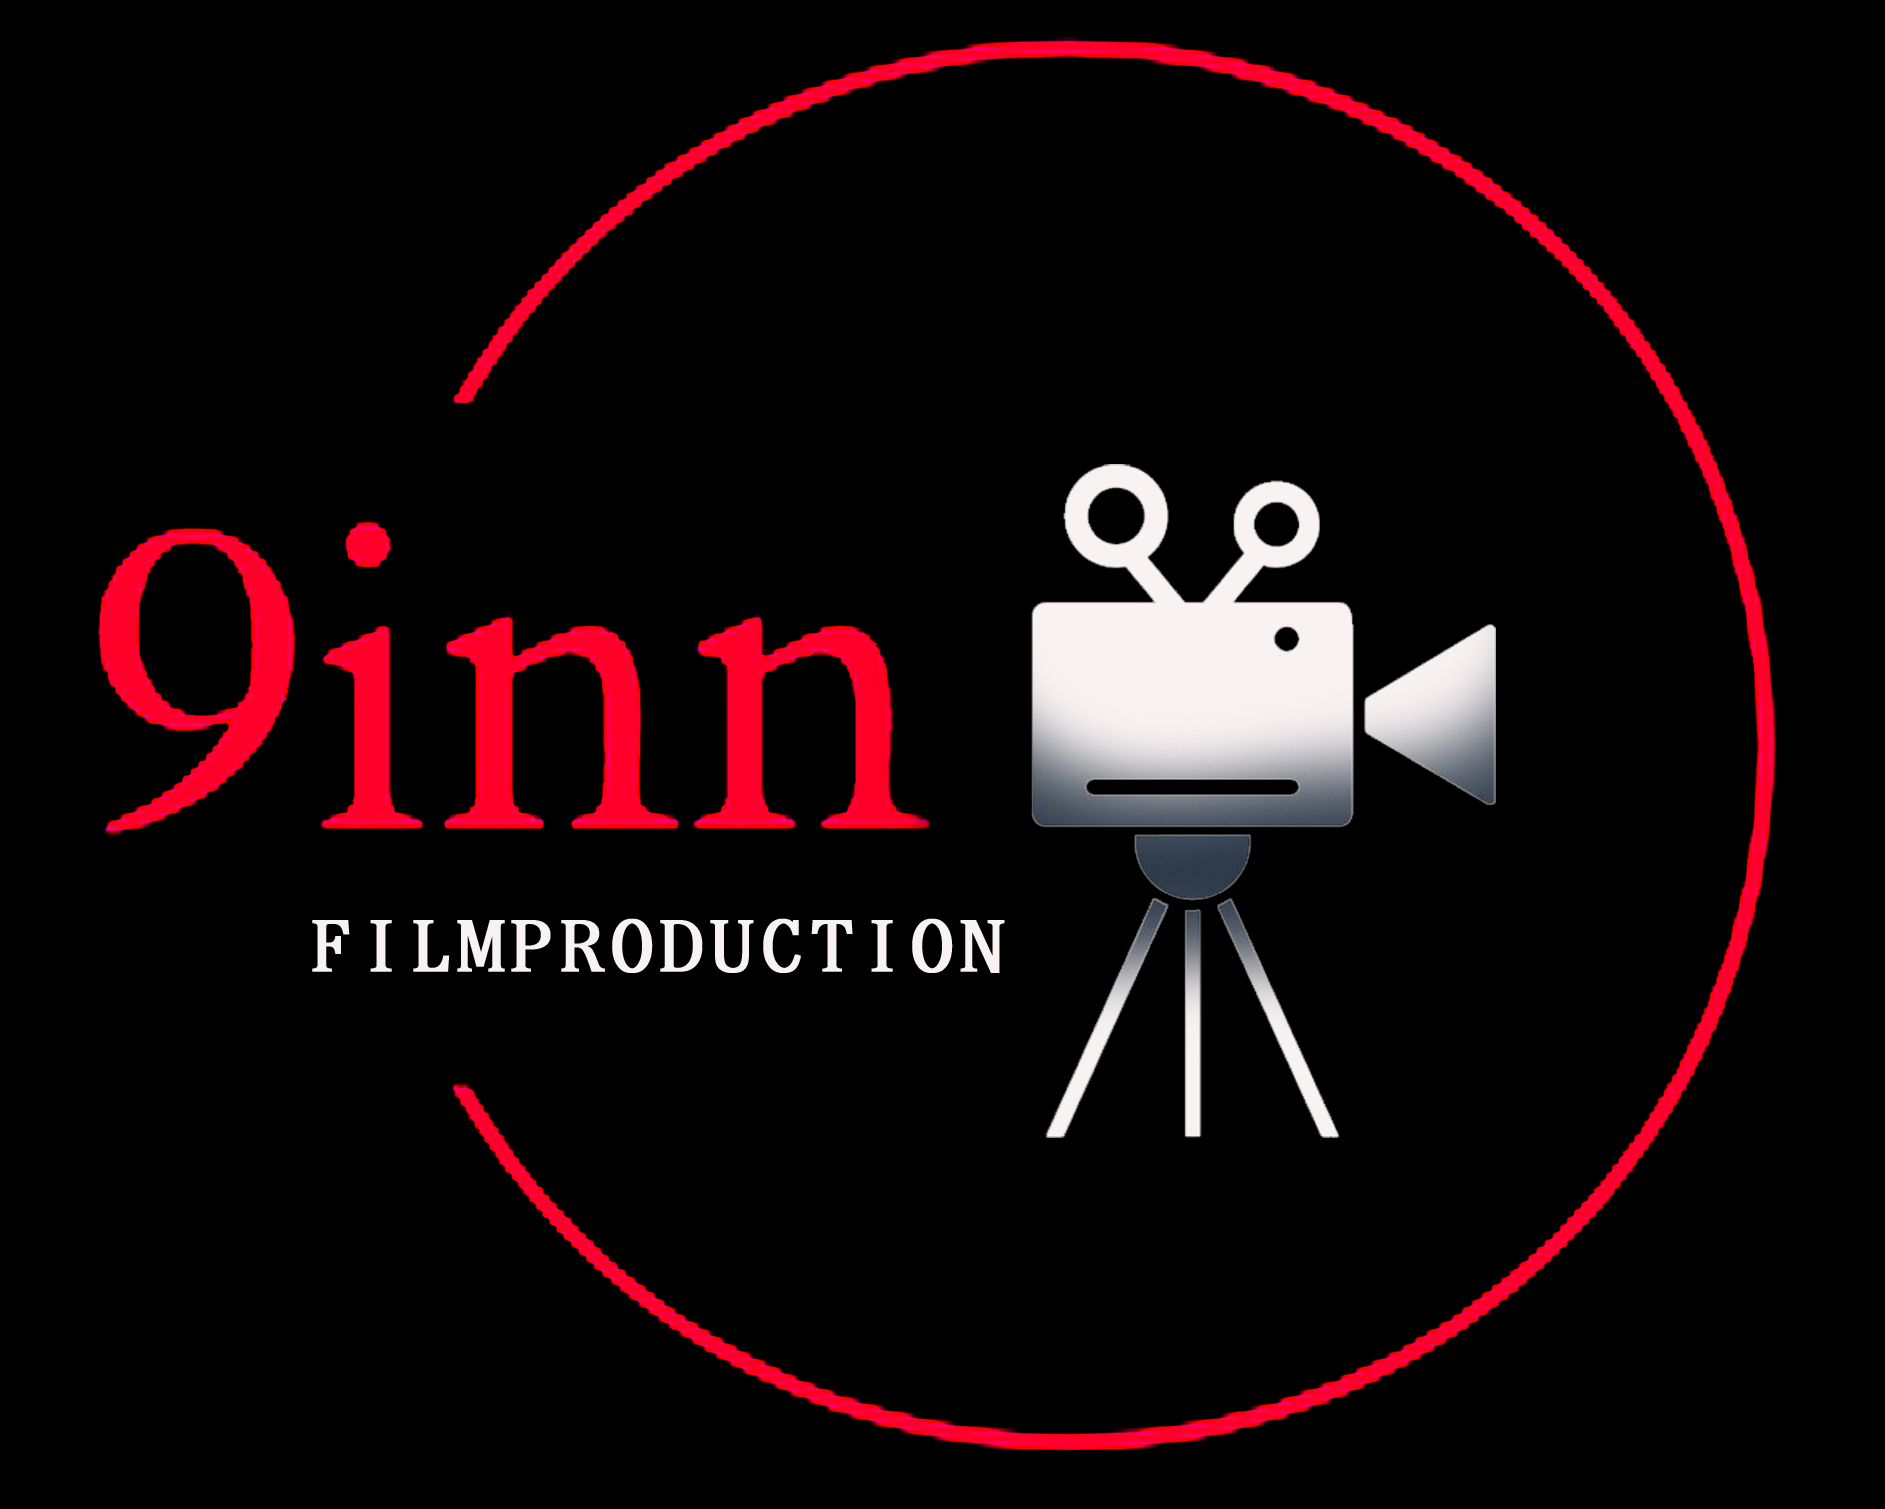 9inn Film Production